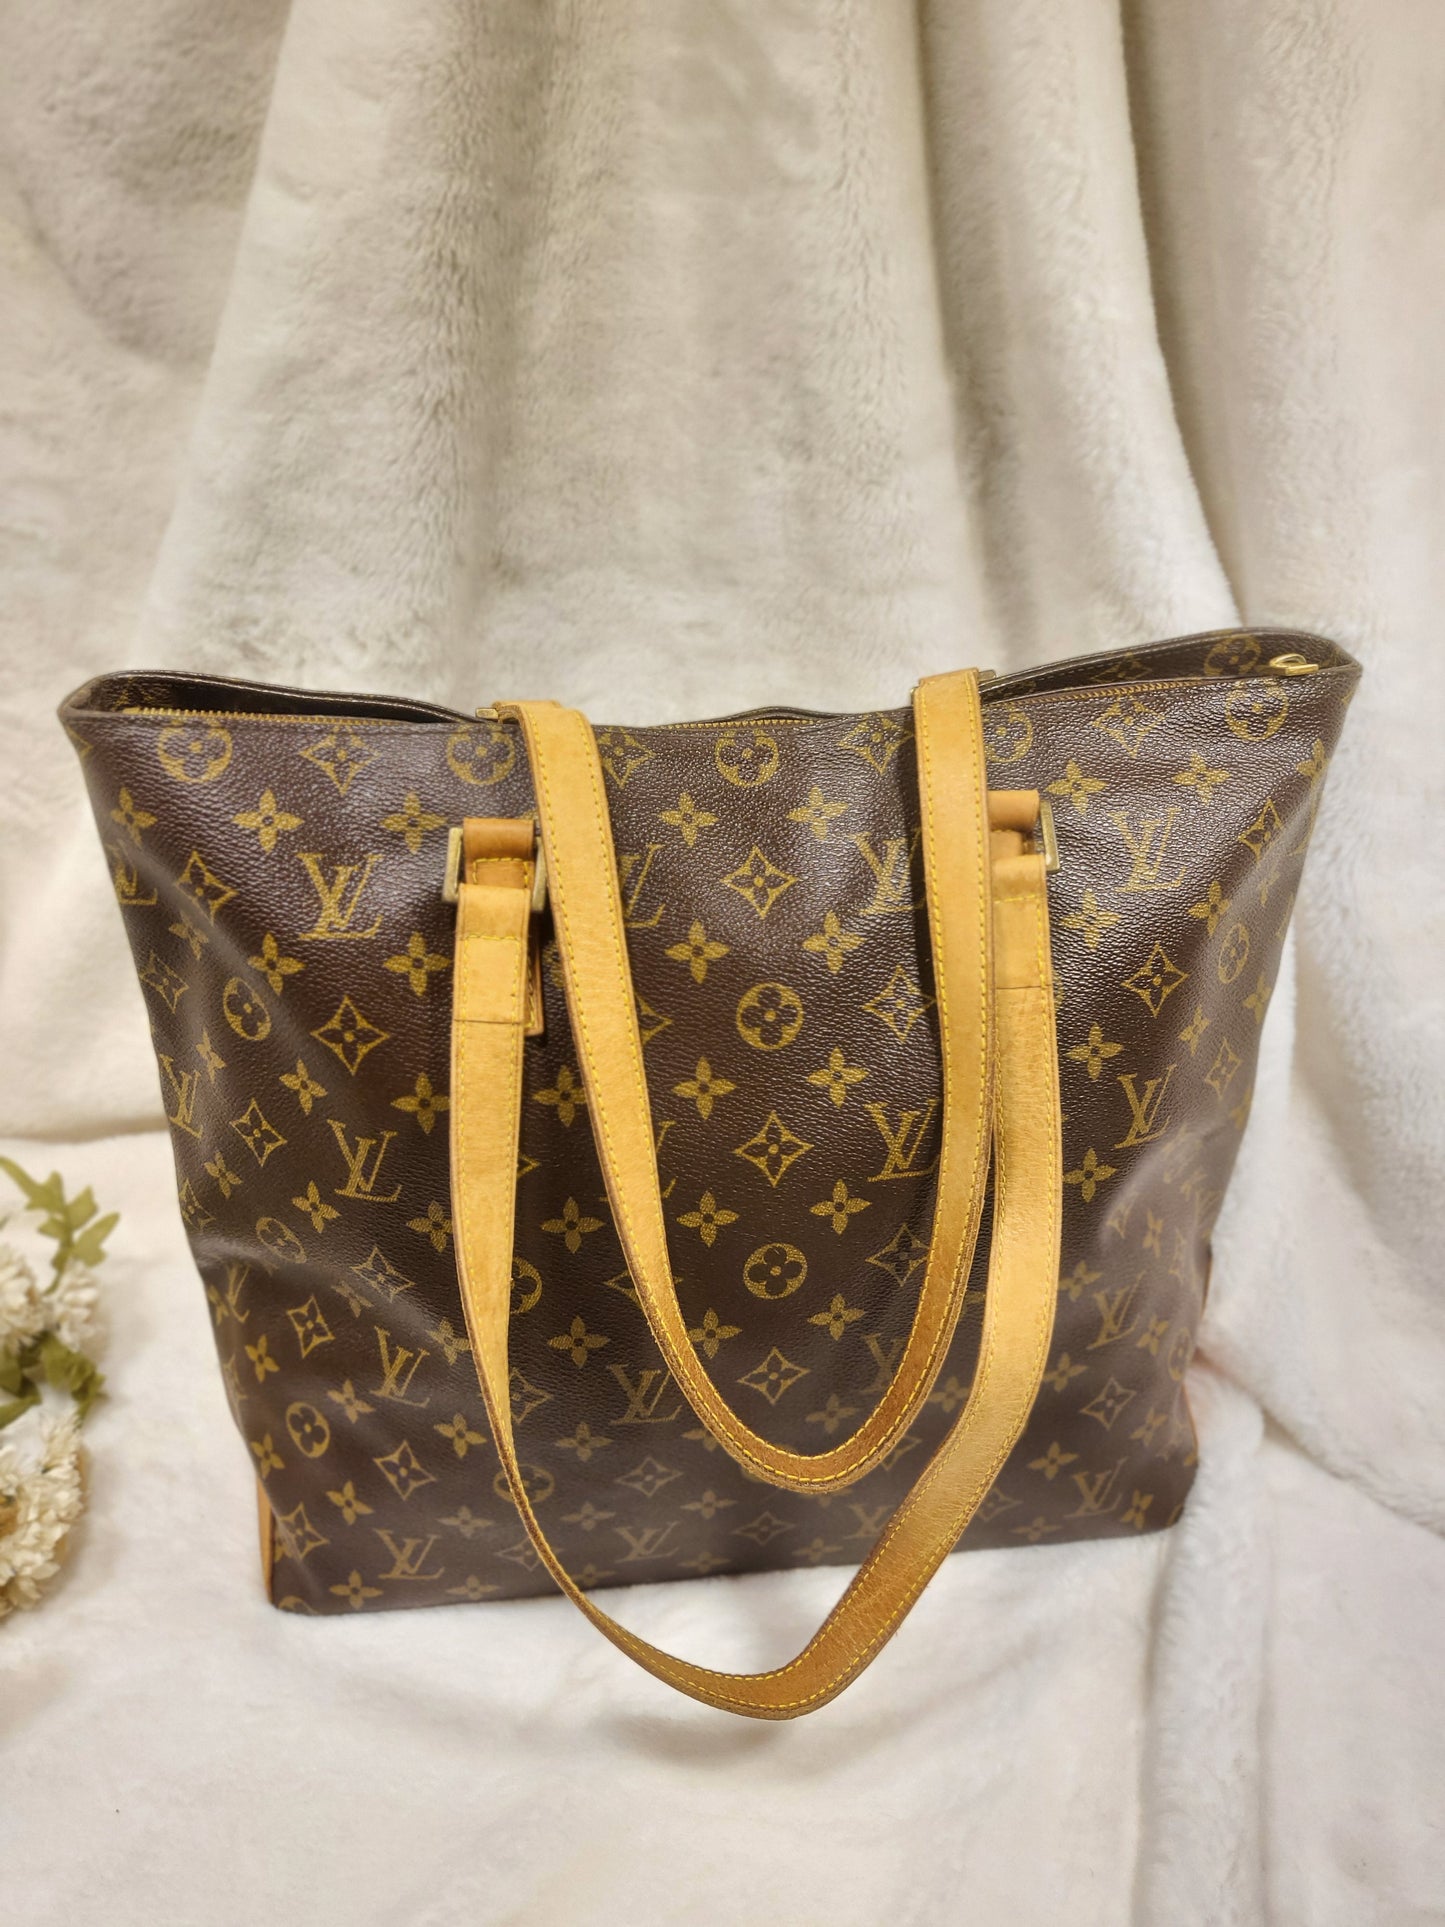 Authentic pre-owned Louis Vuitton Cabas Mezzo tote shoulder bag